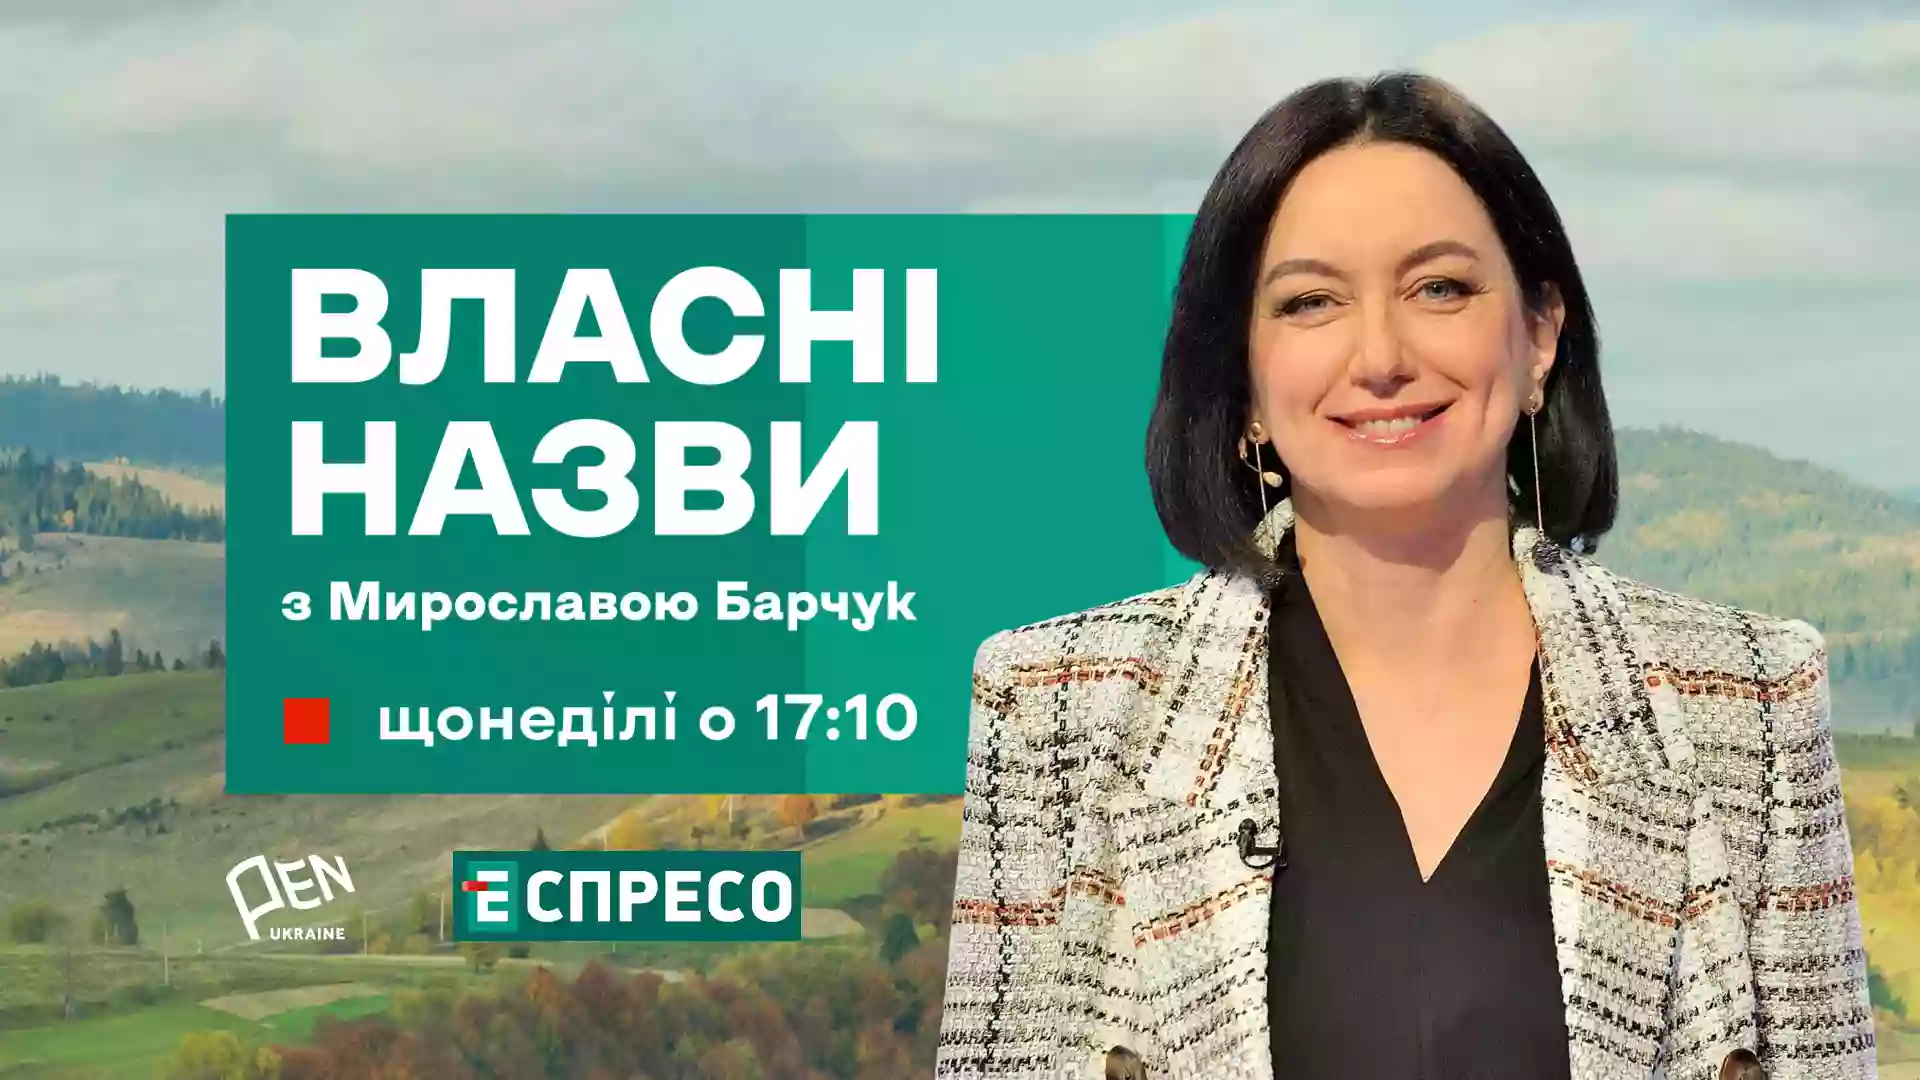 Український ПЕН та канал «Еспресо» запускають телепроєкт «Власні назви з Мирославою Барчук»